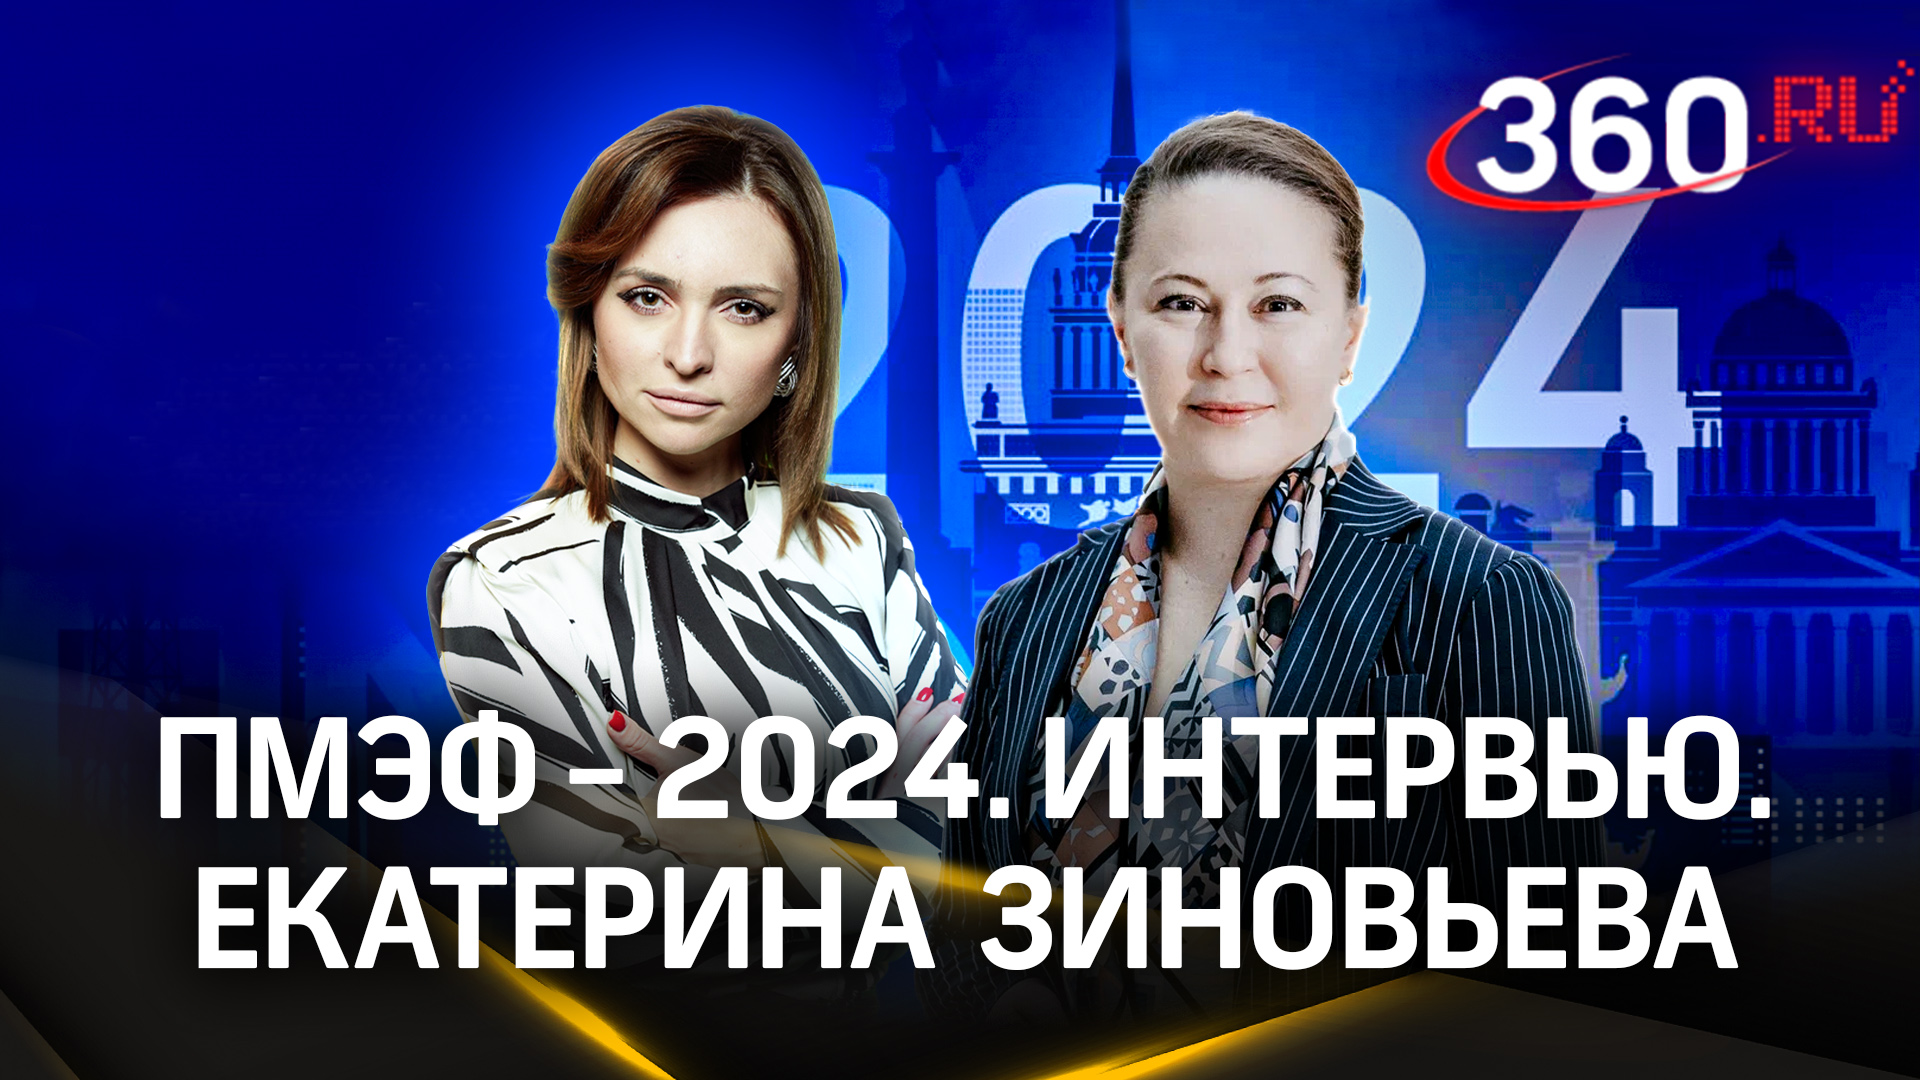 Екатерина Зиновьева: инвестиции и соглашения Подмосковья в цифрах | ПМЭФ-2024